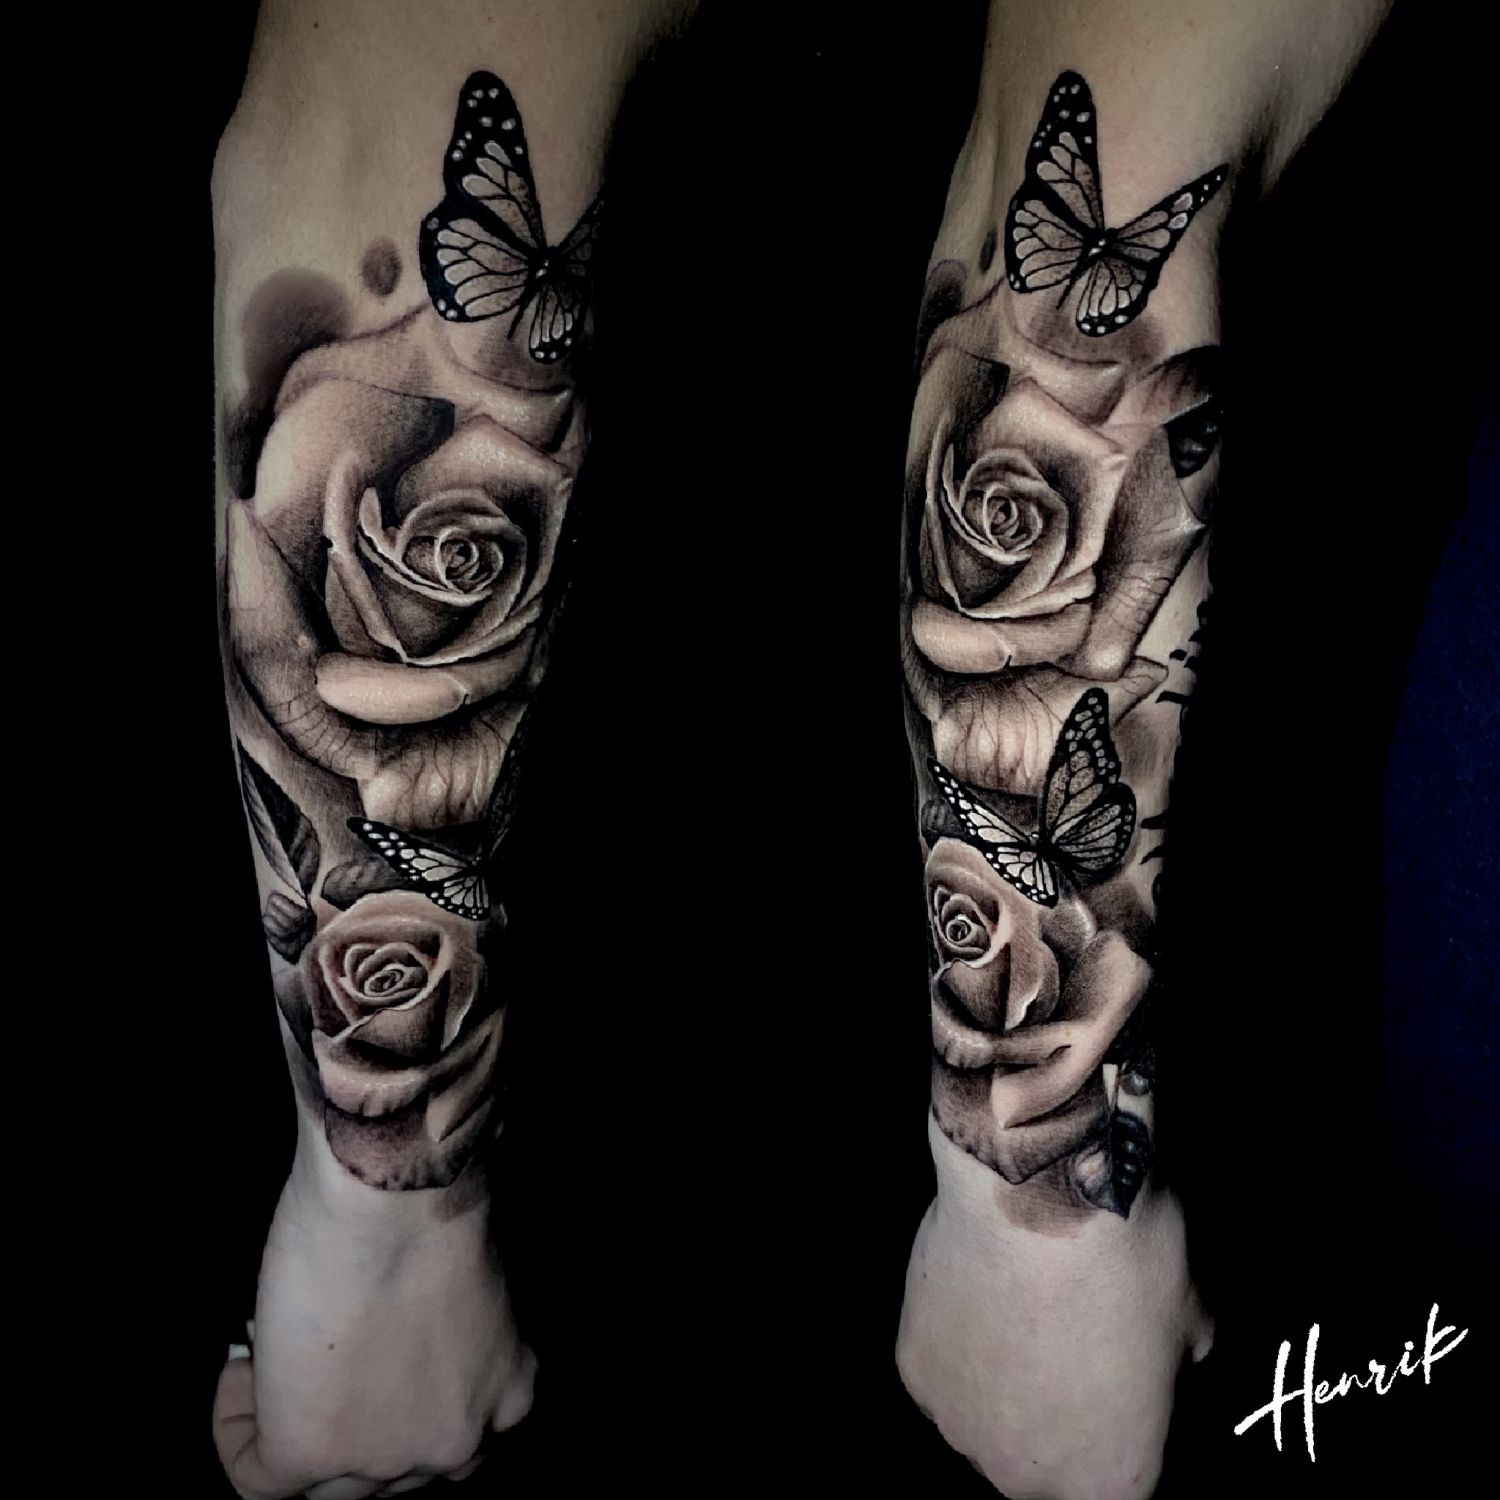 Alkar tetoválás, Állat tetoválás, Fantázia tetoválás, Fekete fehér tetoválás, Realisztikus tetoválás, Szimbólumok, Virág tetoválás